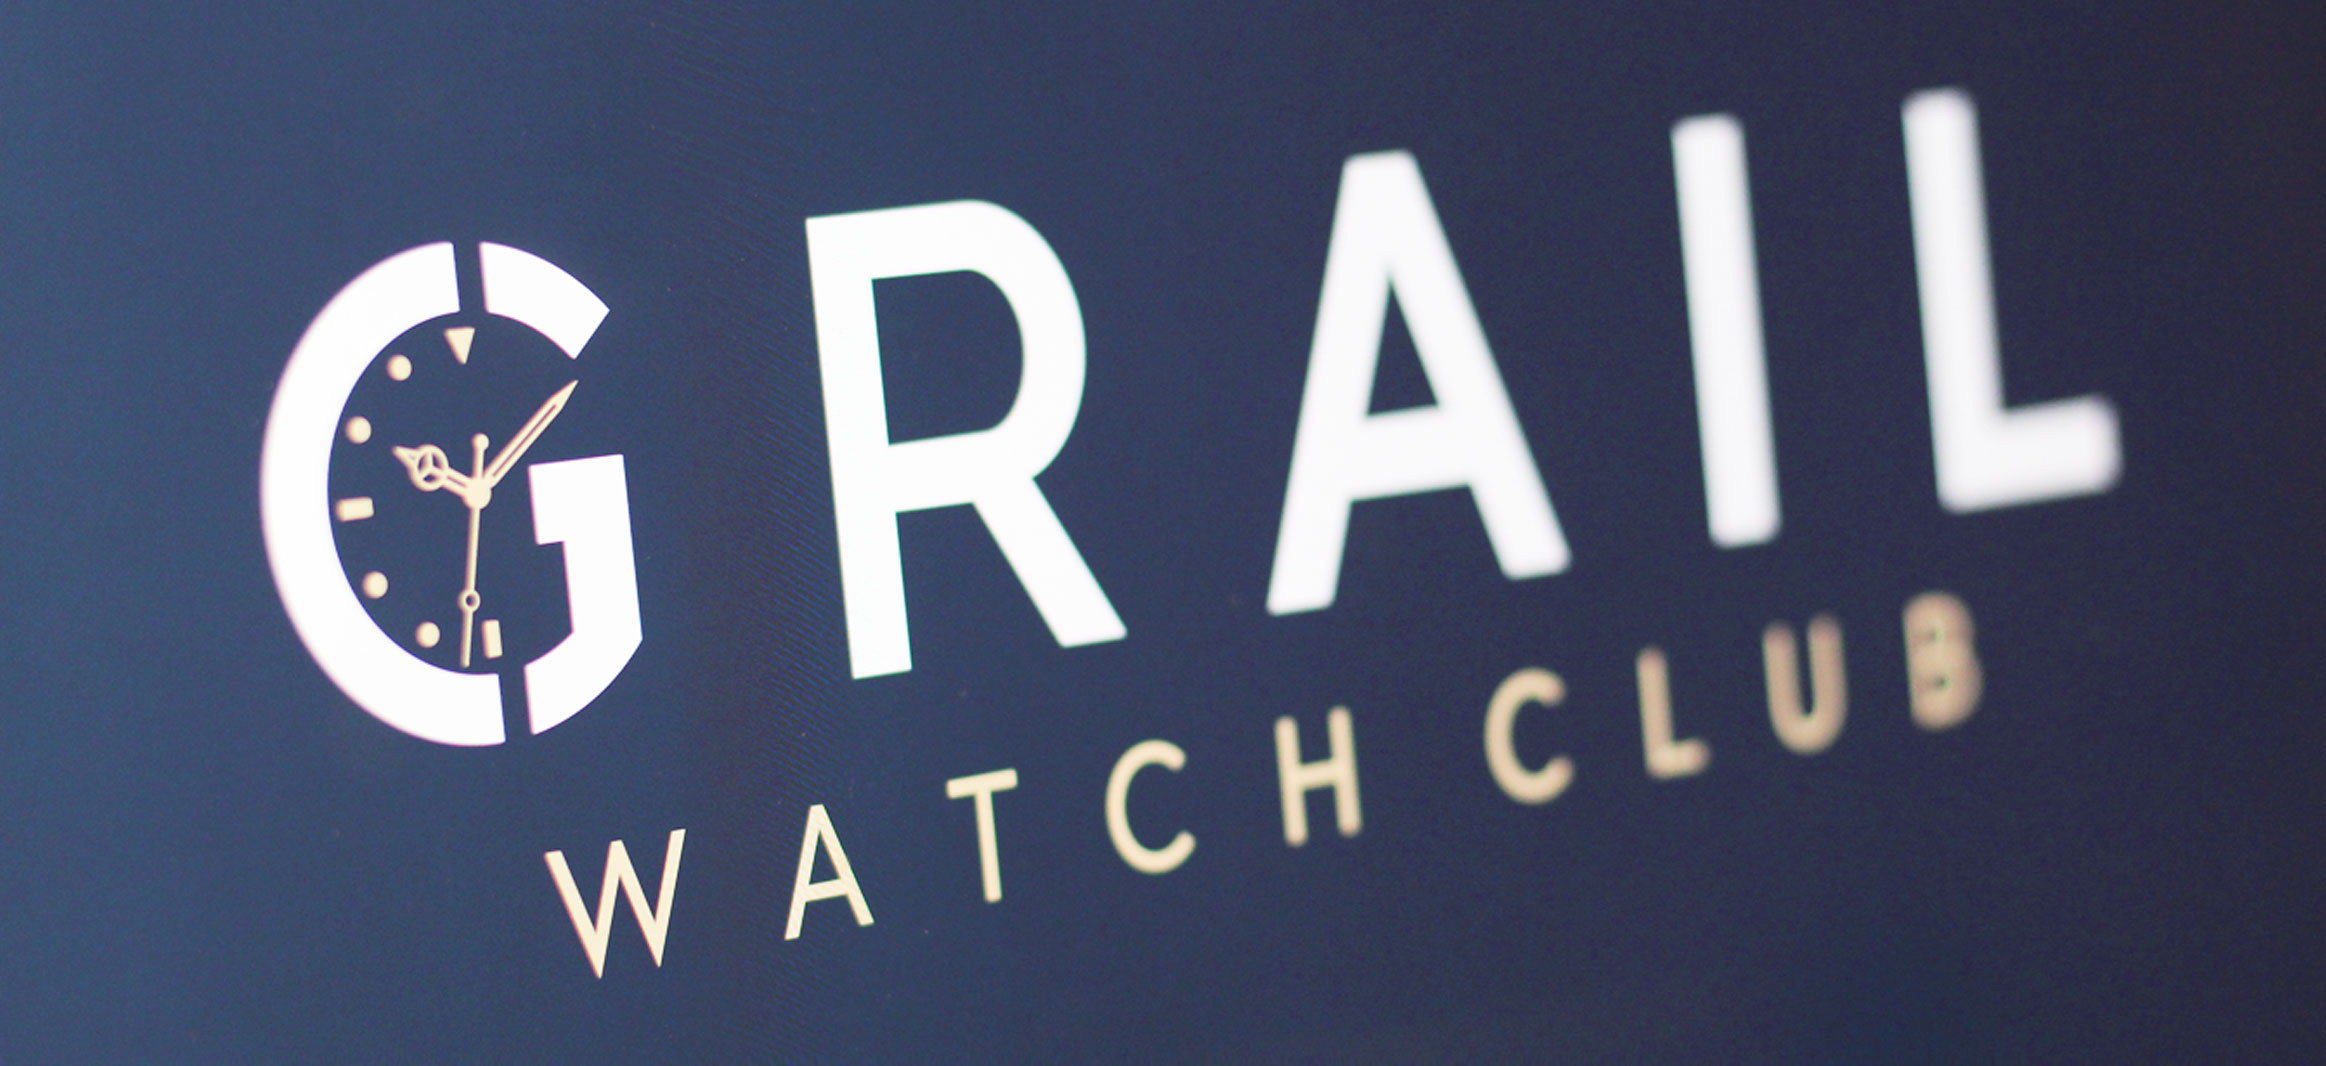 Grail Watch Club